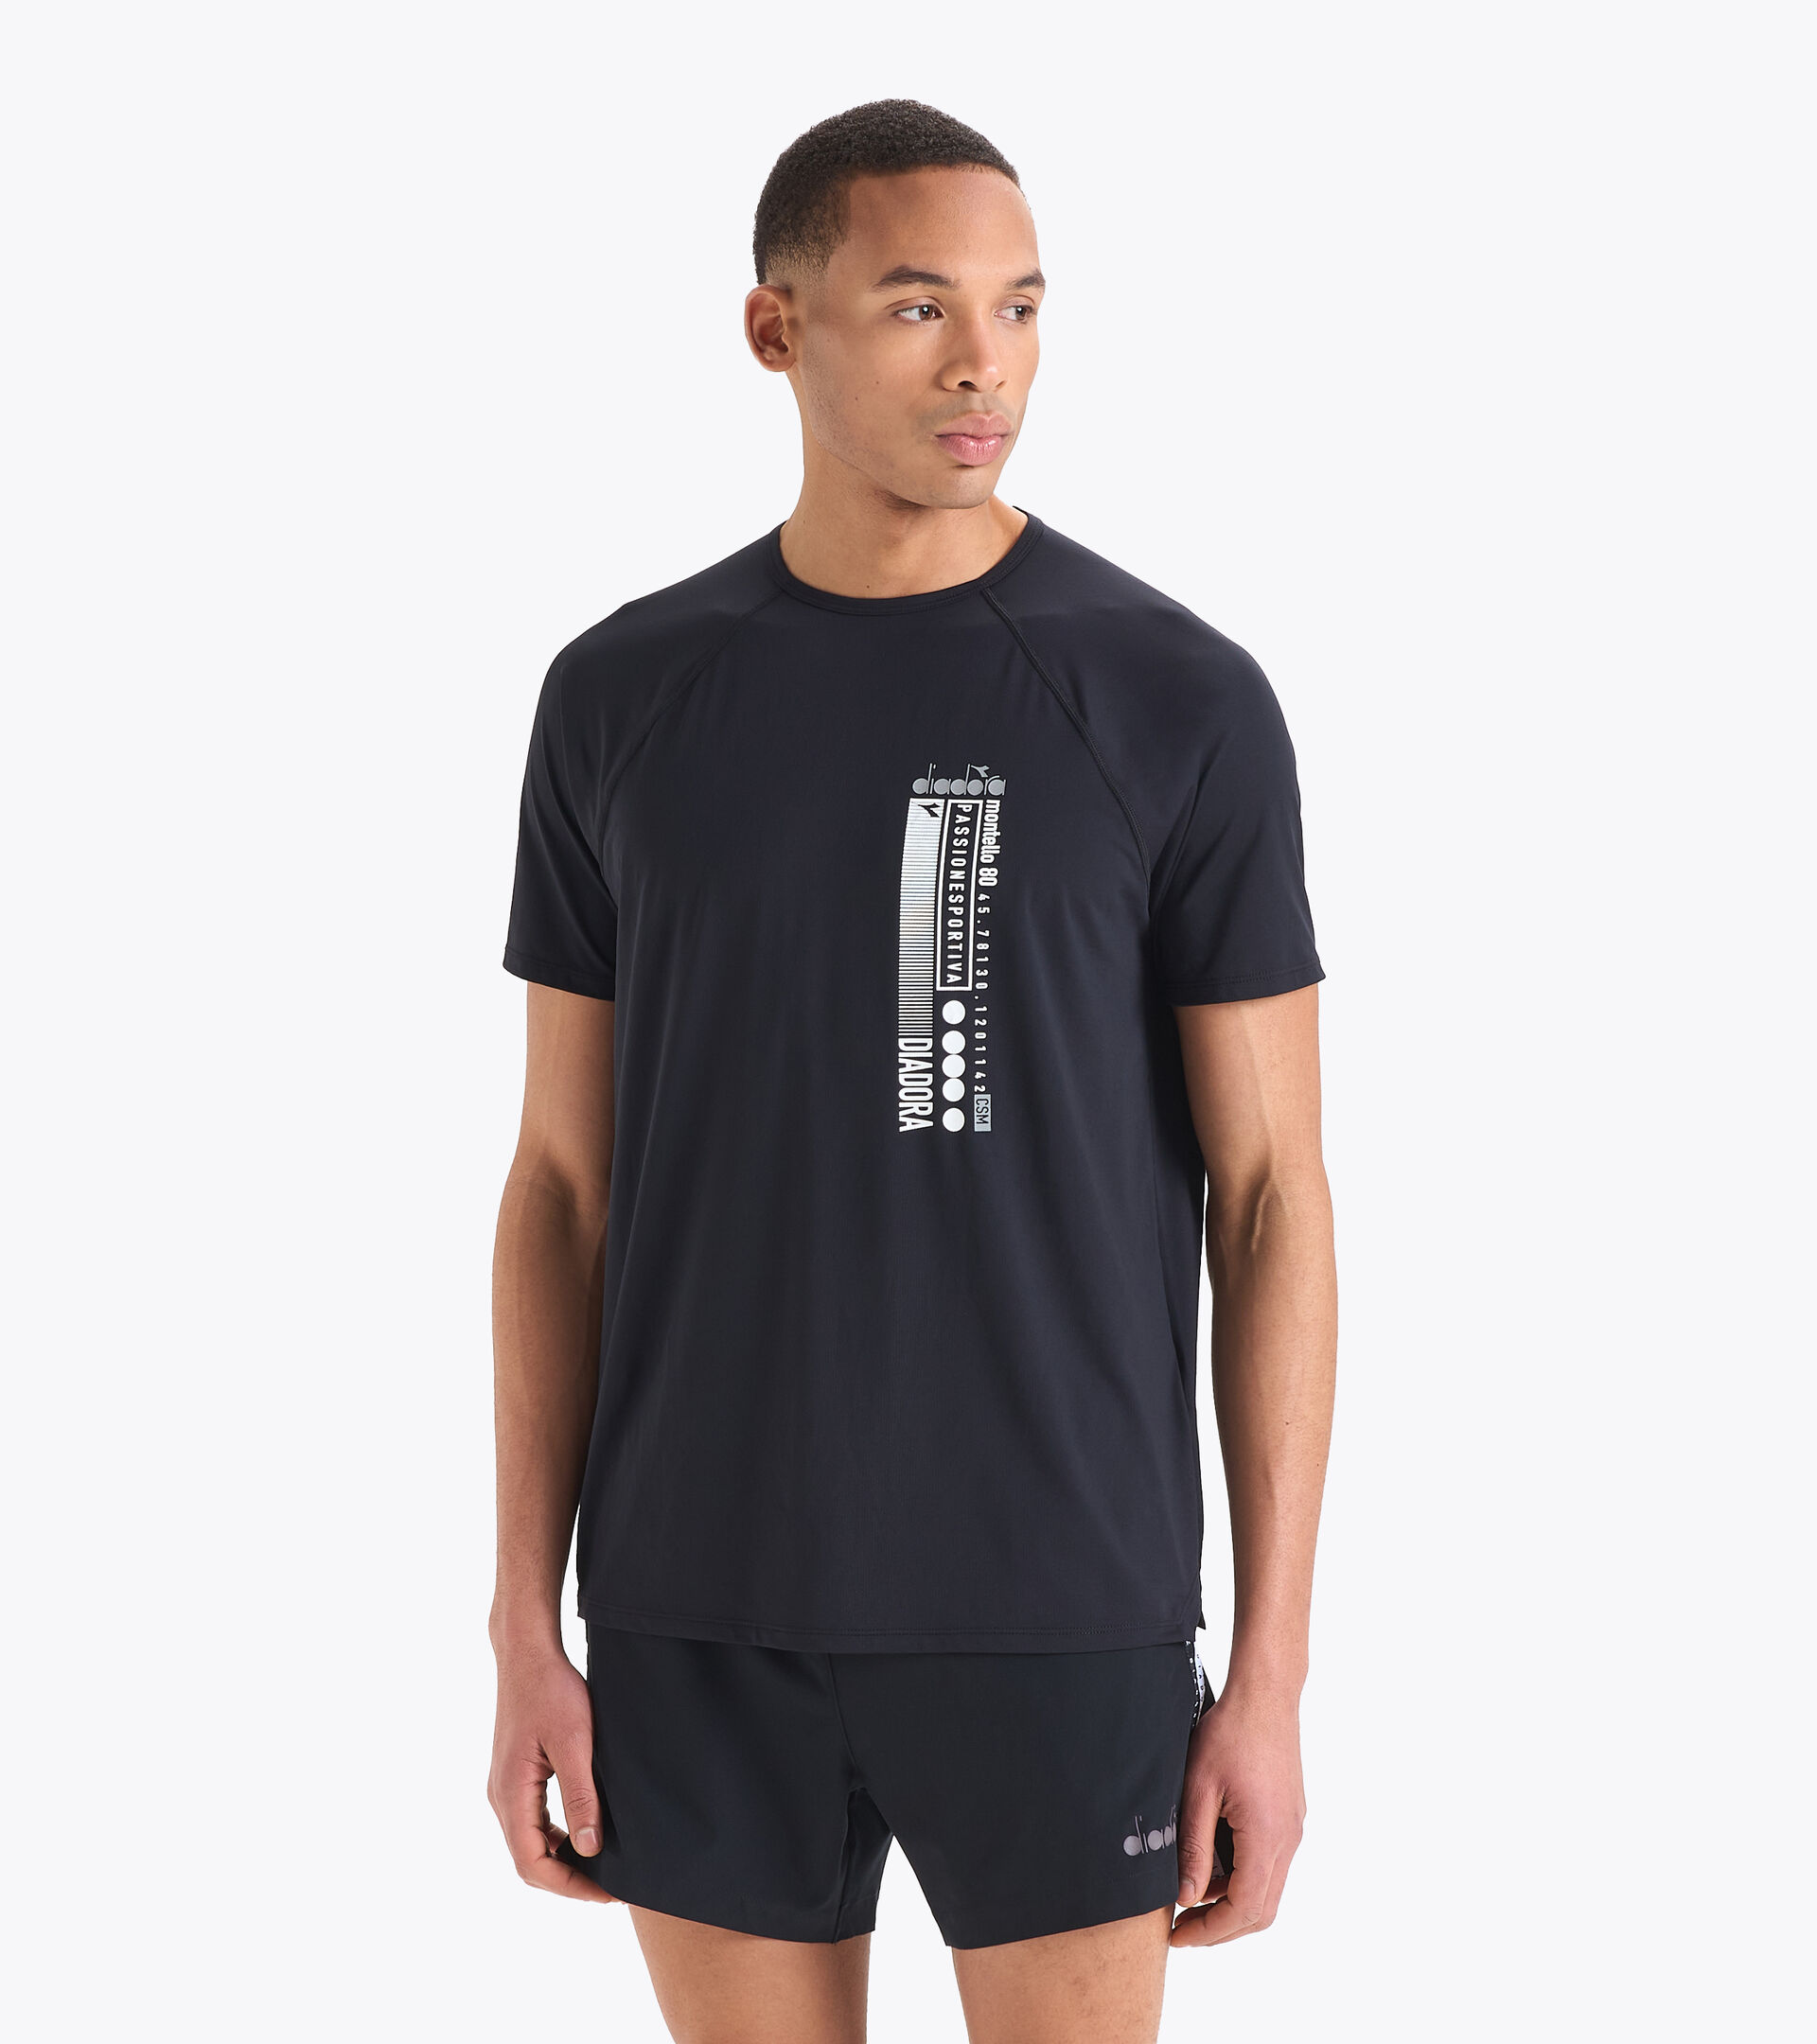 Gymshark Lifting Club T-Shirt - Black